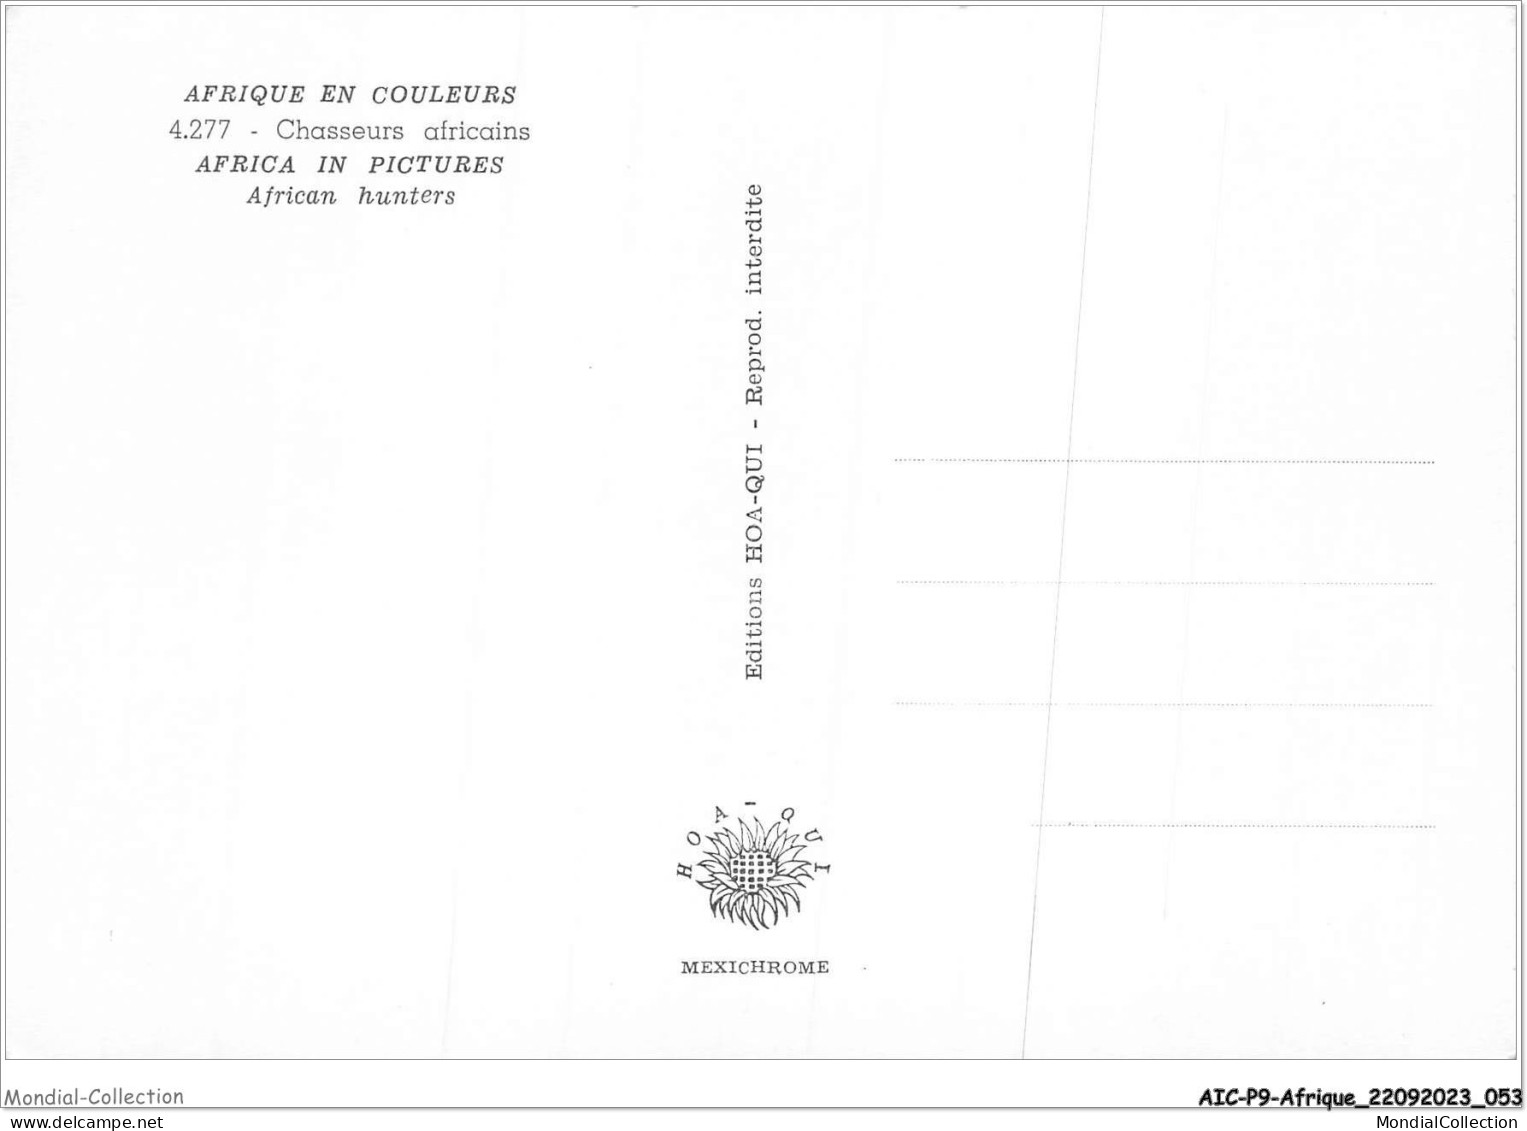 AICP9-AFRIQUE-0990 - AFRIQUE EN COULEURS - Chasseurs Africains - Unclassified